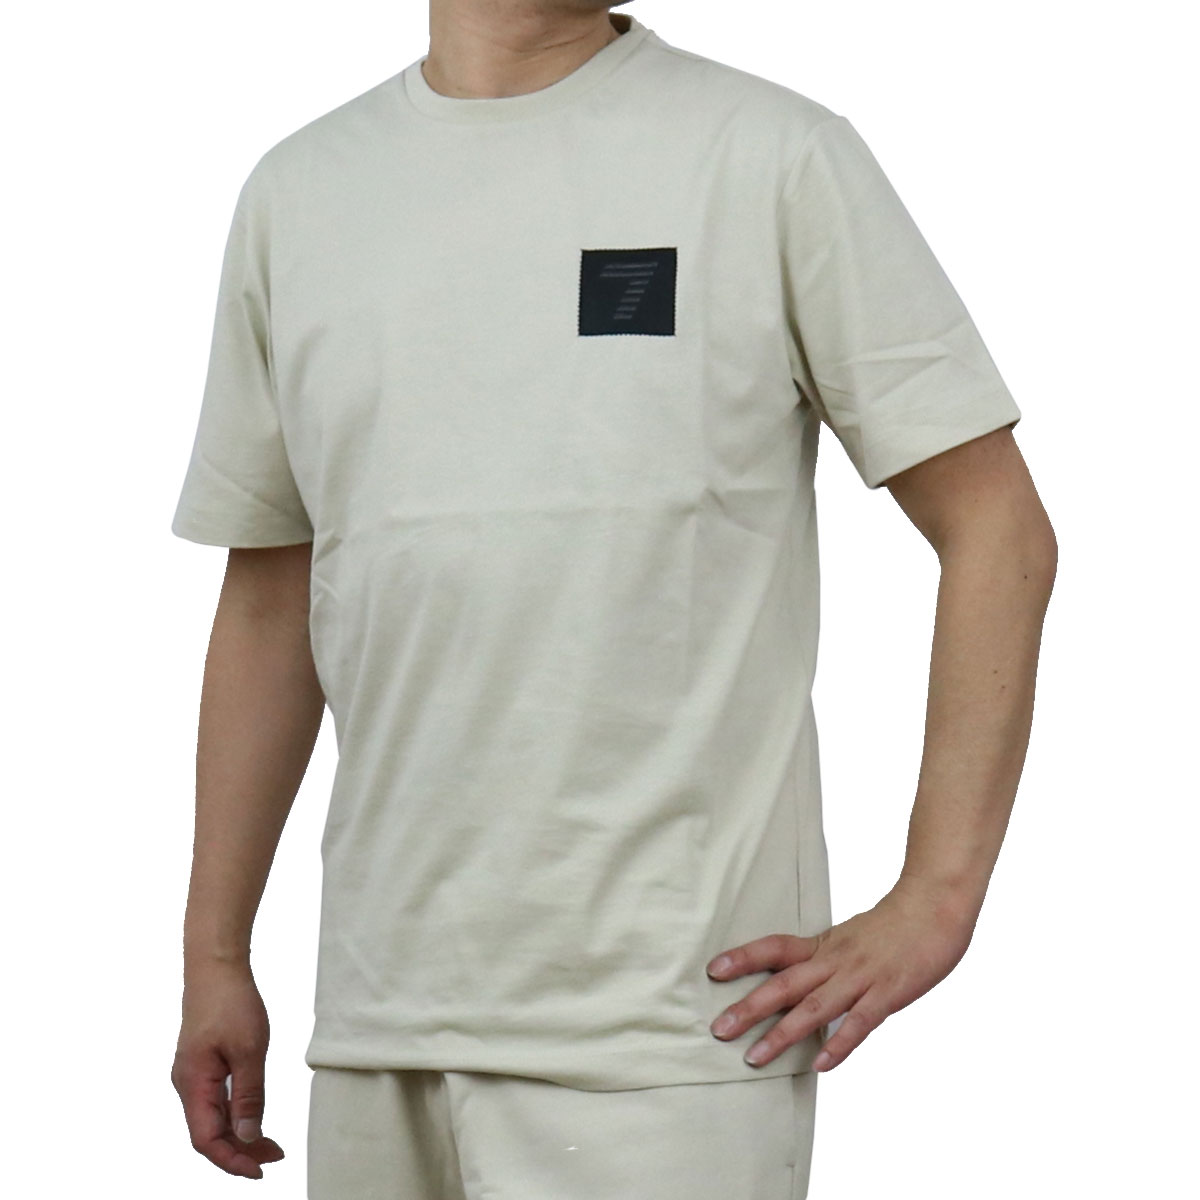 【激レア!】 カルバンクライン S 白 Tシャツ CKロゴ エンボス加工 ハワイ